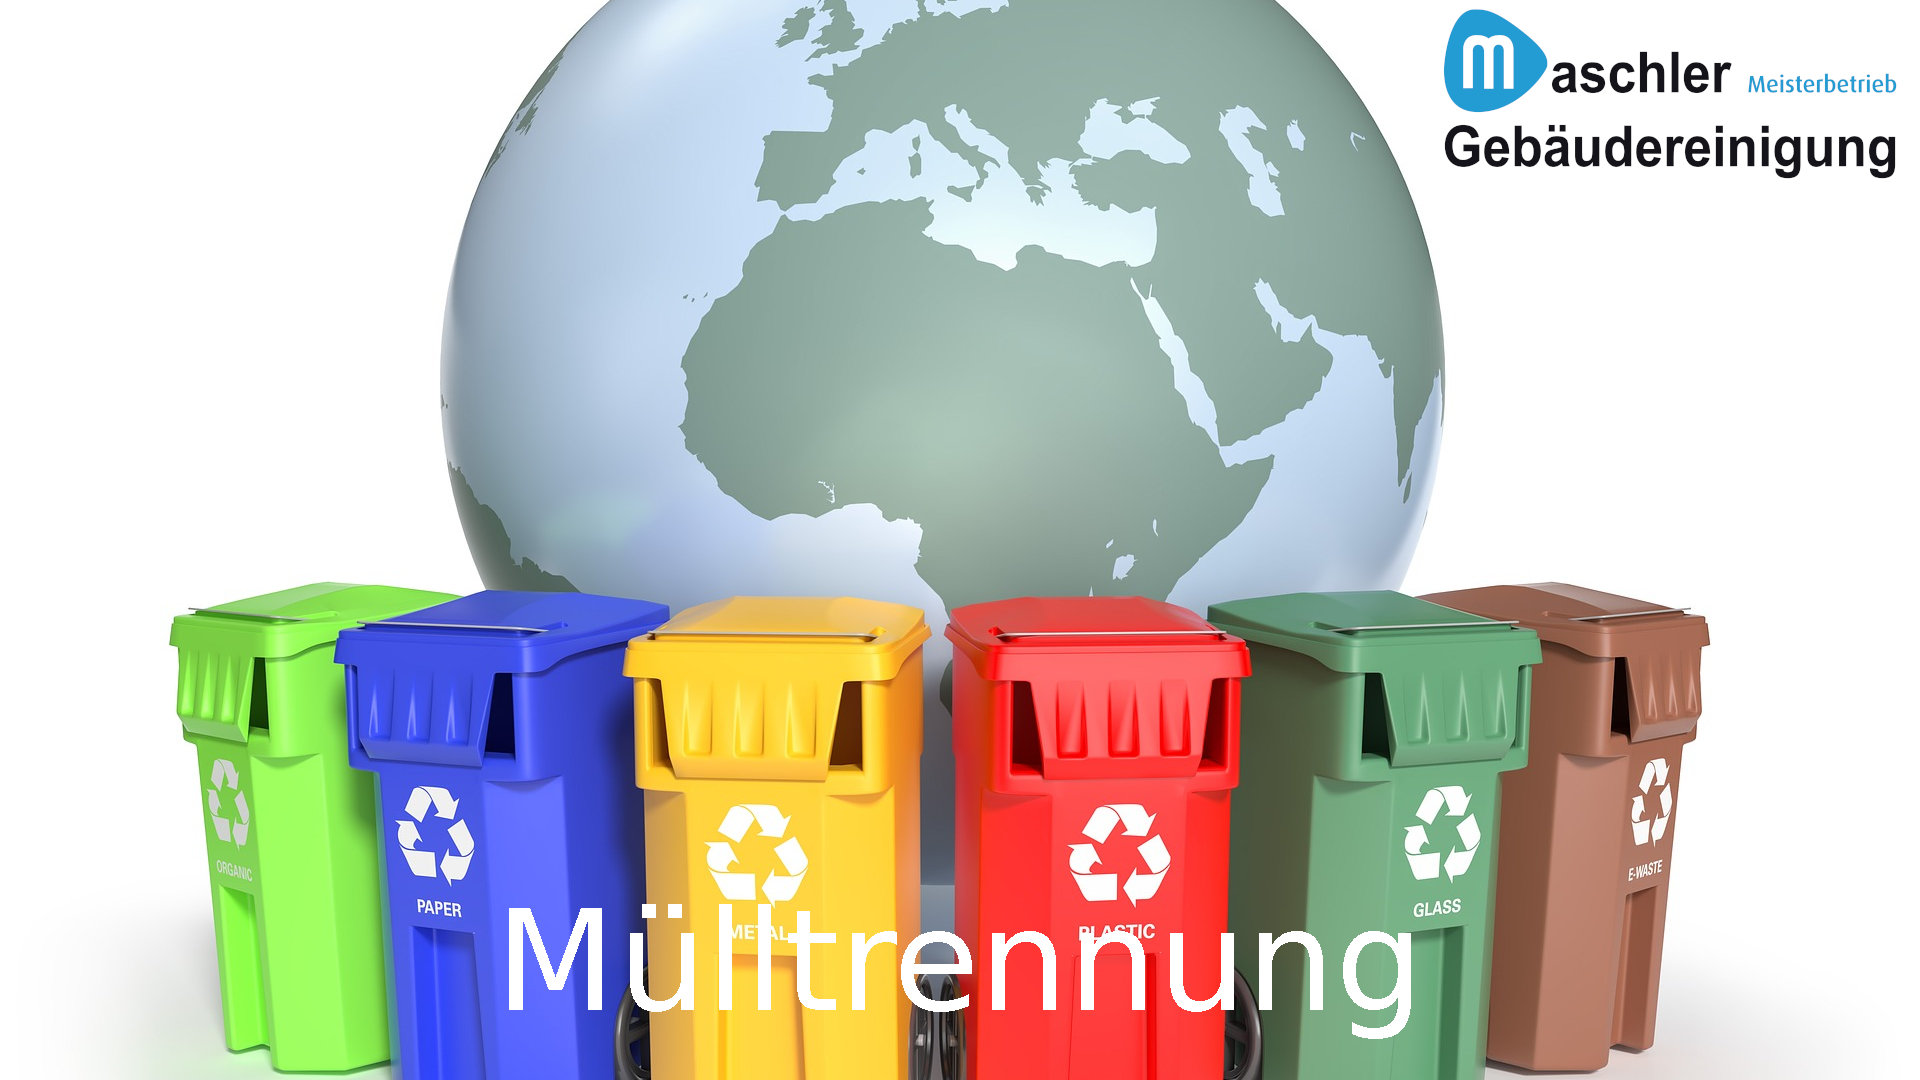 Mülltrennung & Entsorgung - Gebäudereinigung Maschler Schwerin